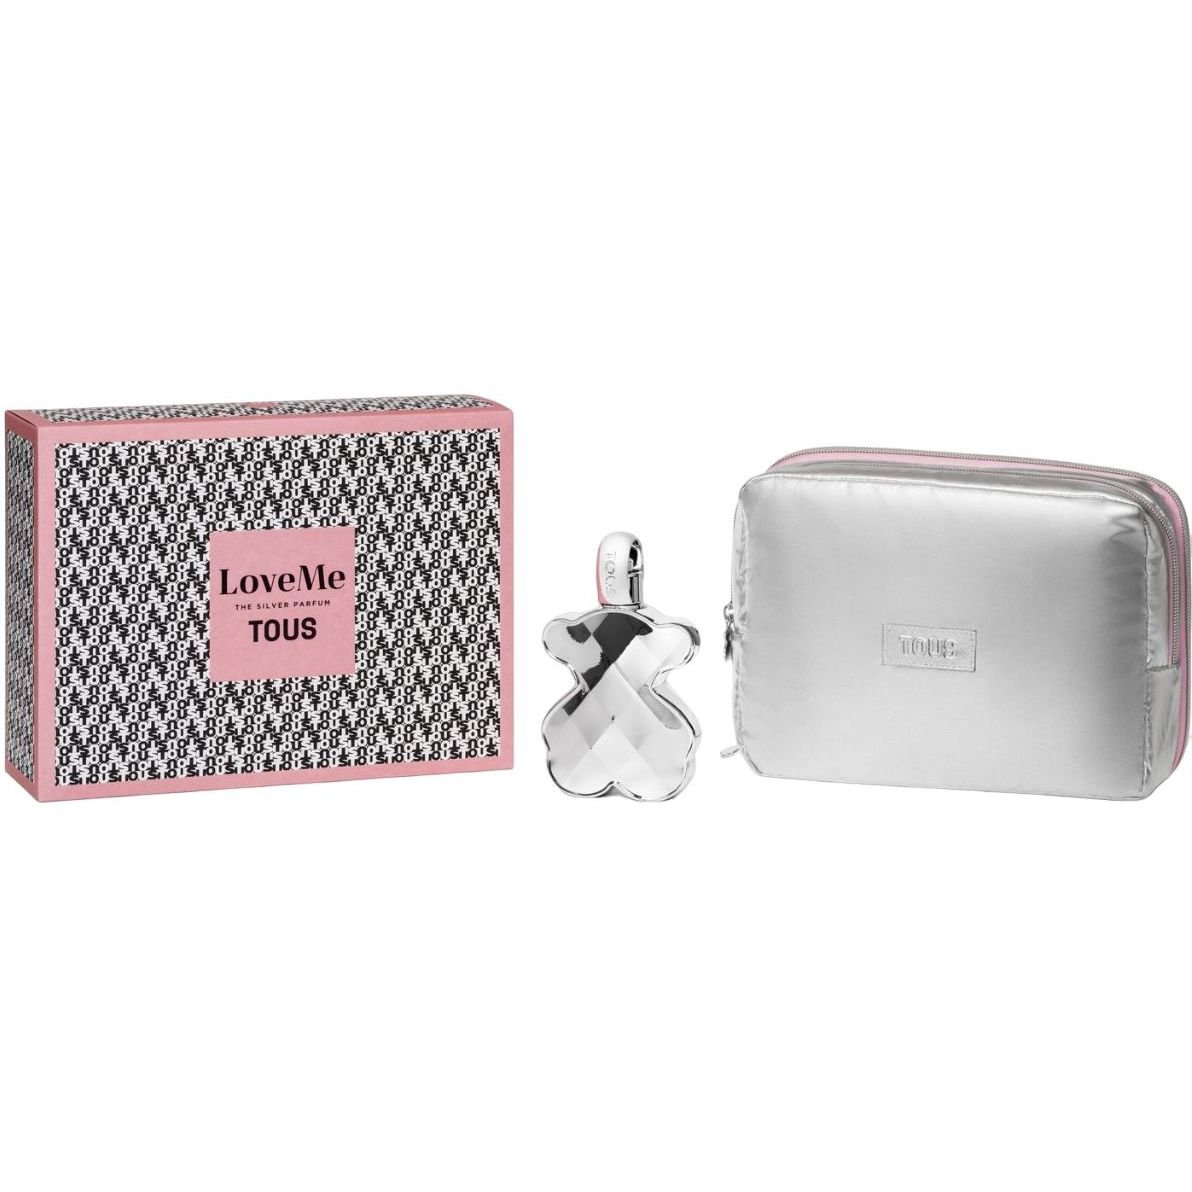 Подарочный набор для женщин Tous LoveMe The Silver Parfum, 90 мл + косметичка - фото 1